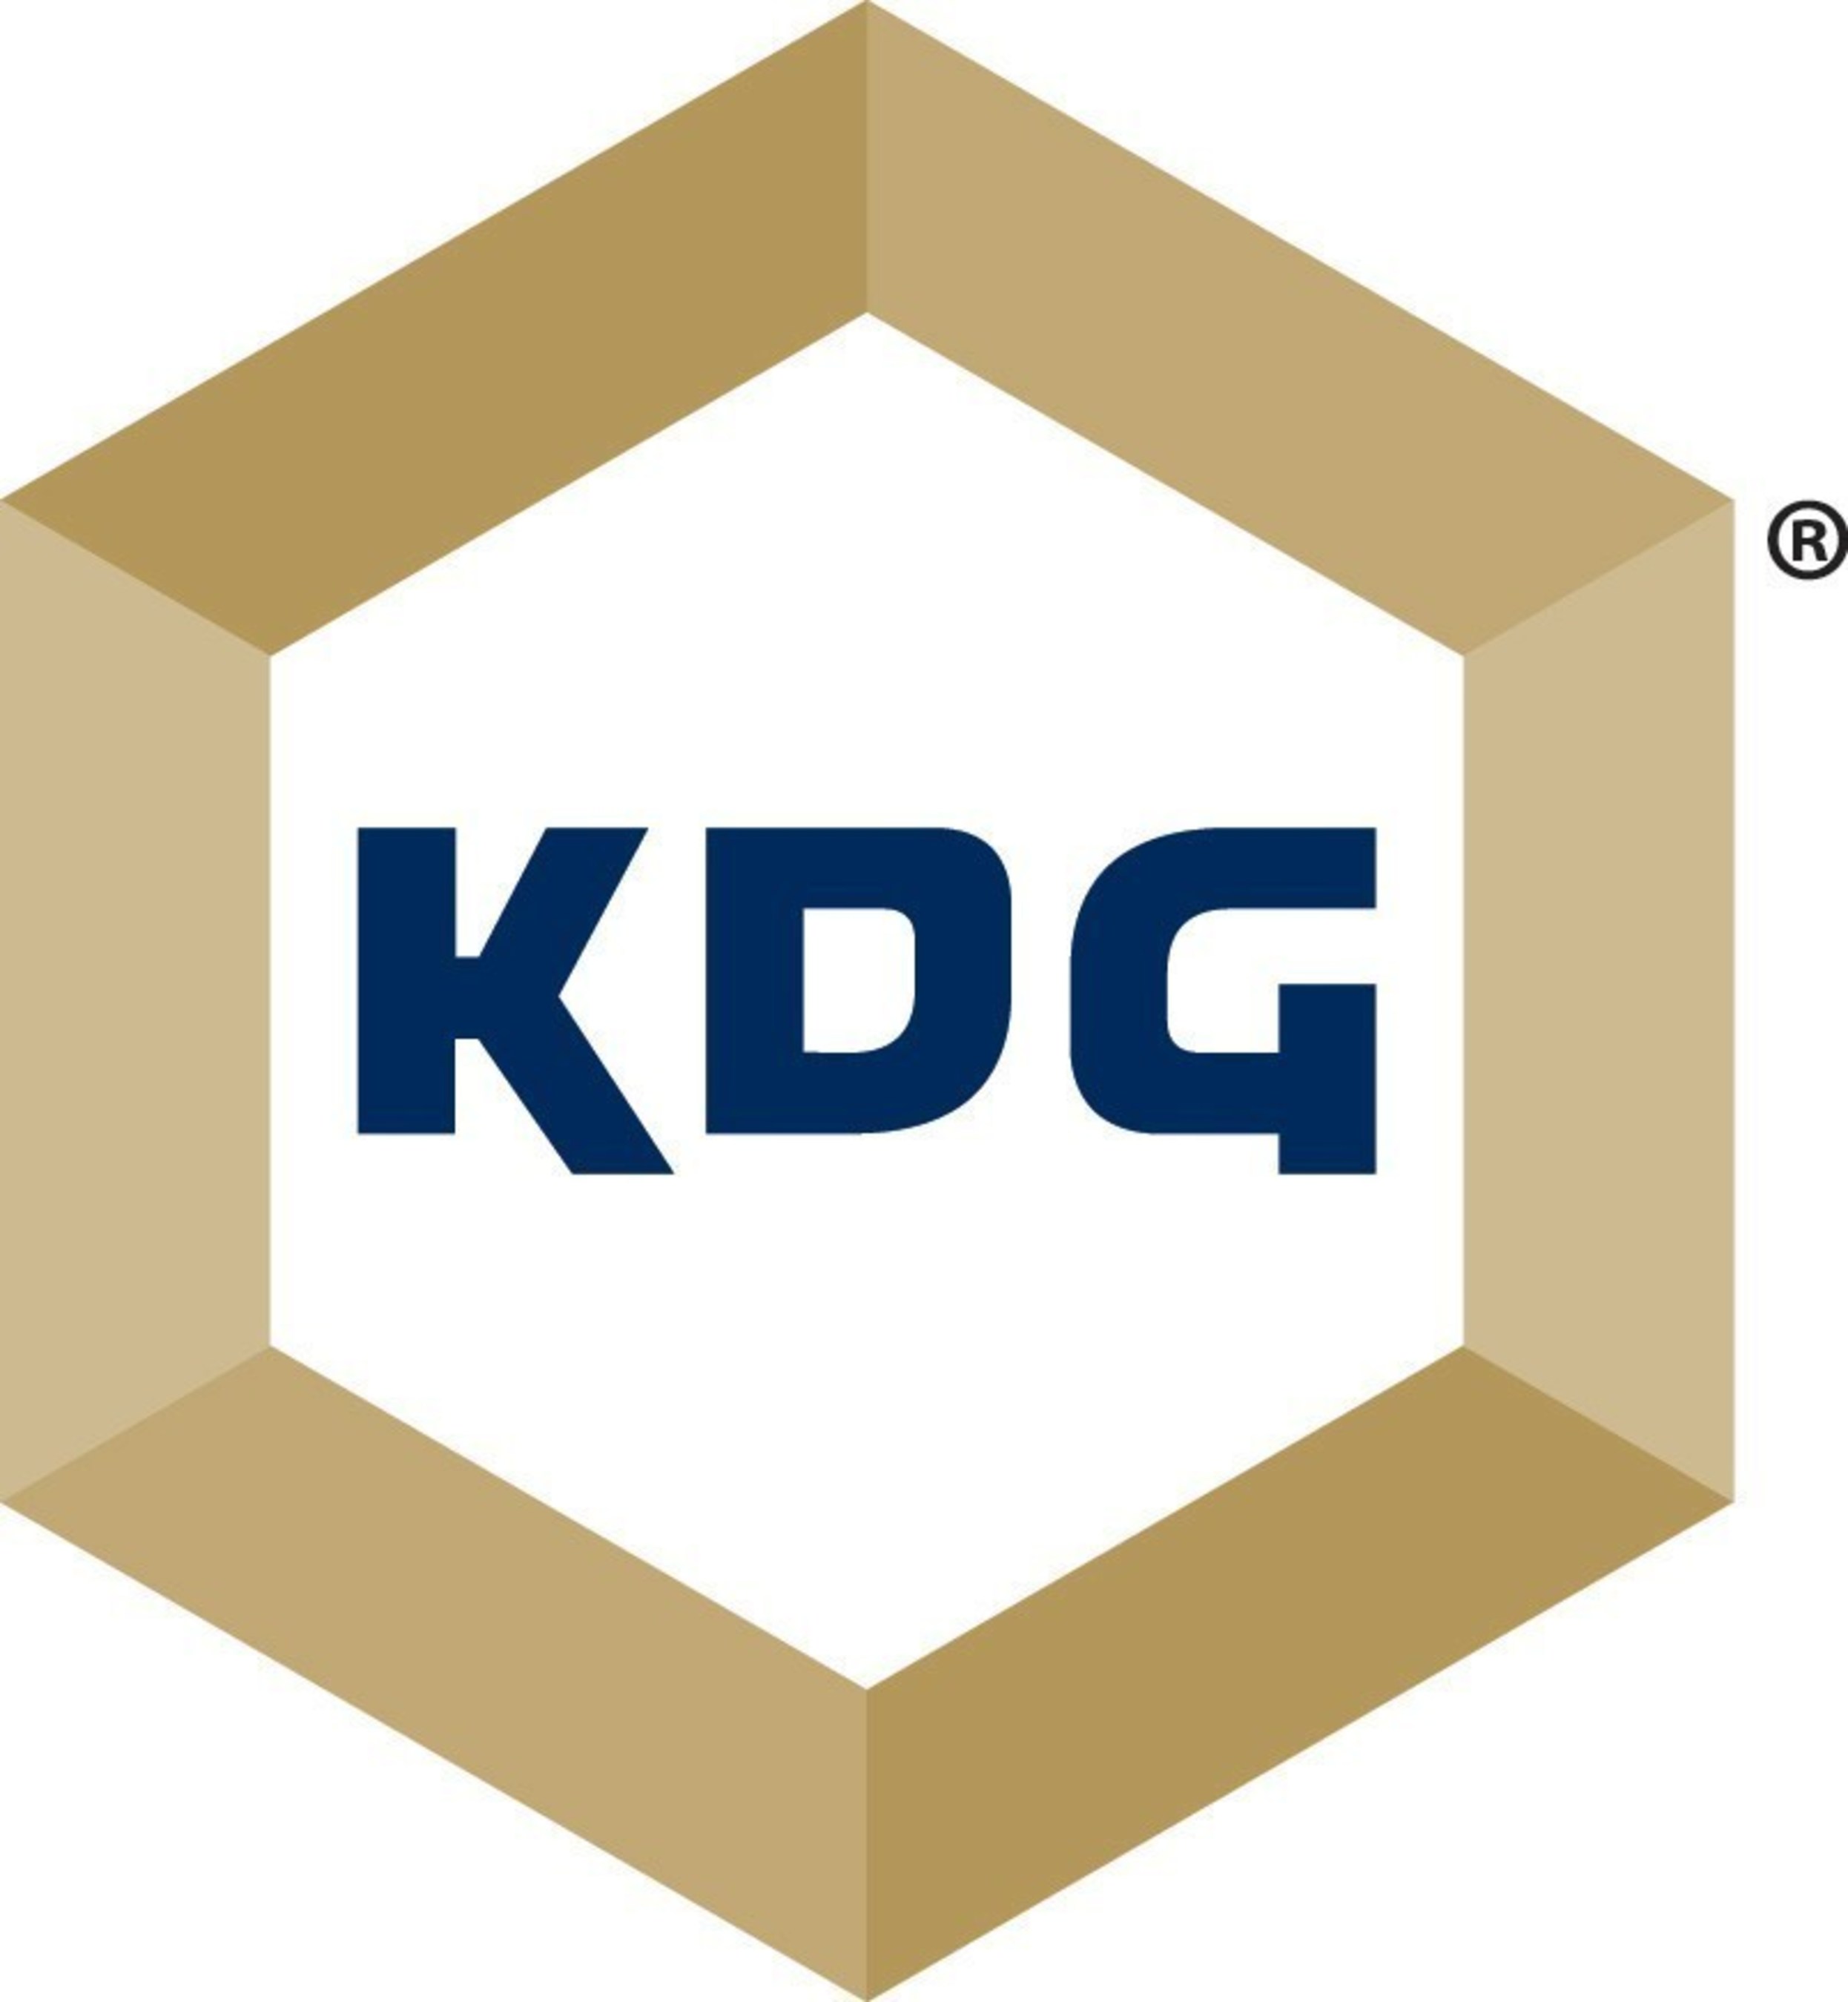 KODA Distribution Group logo.